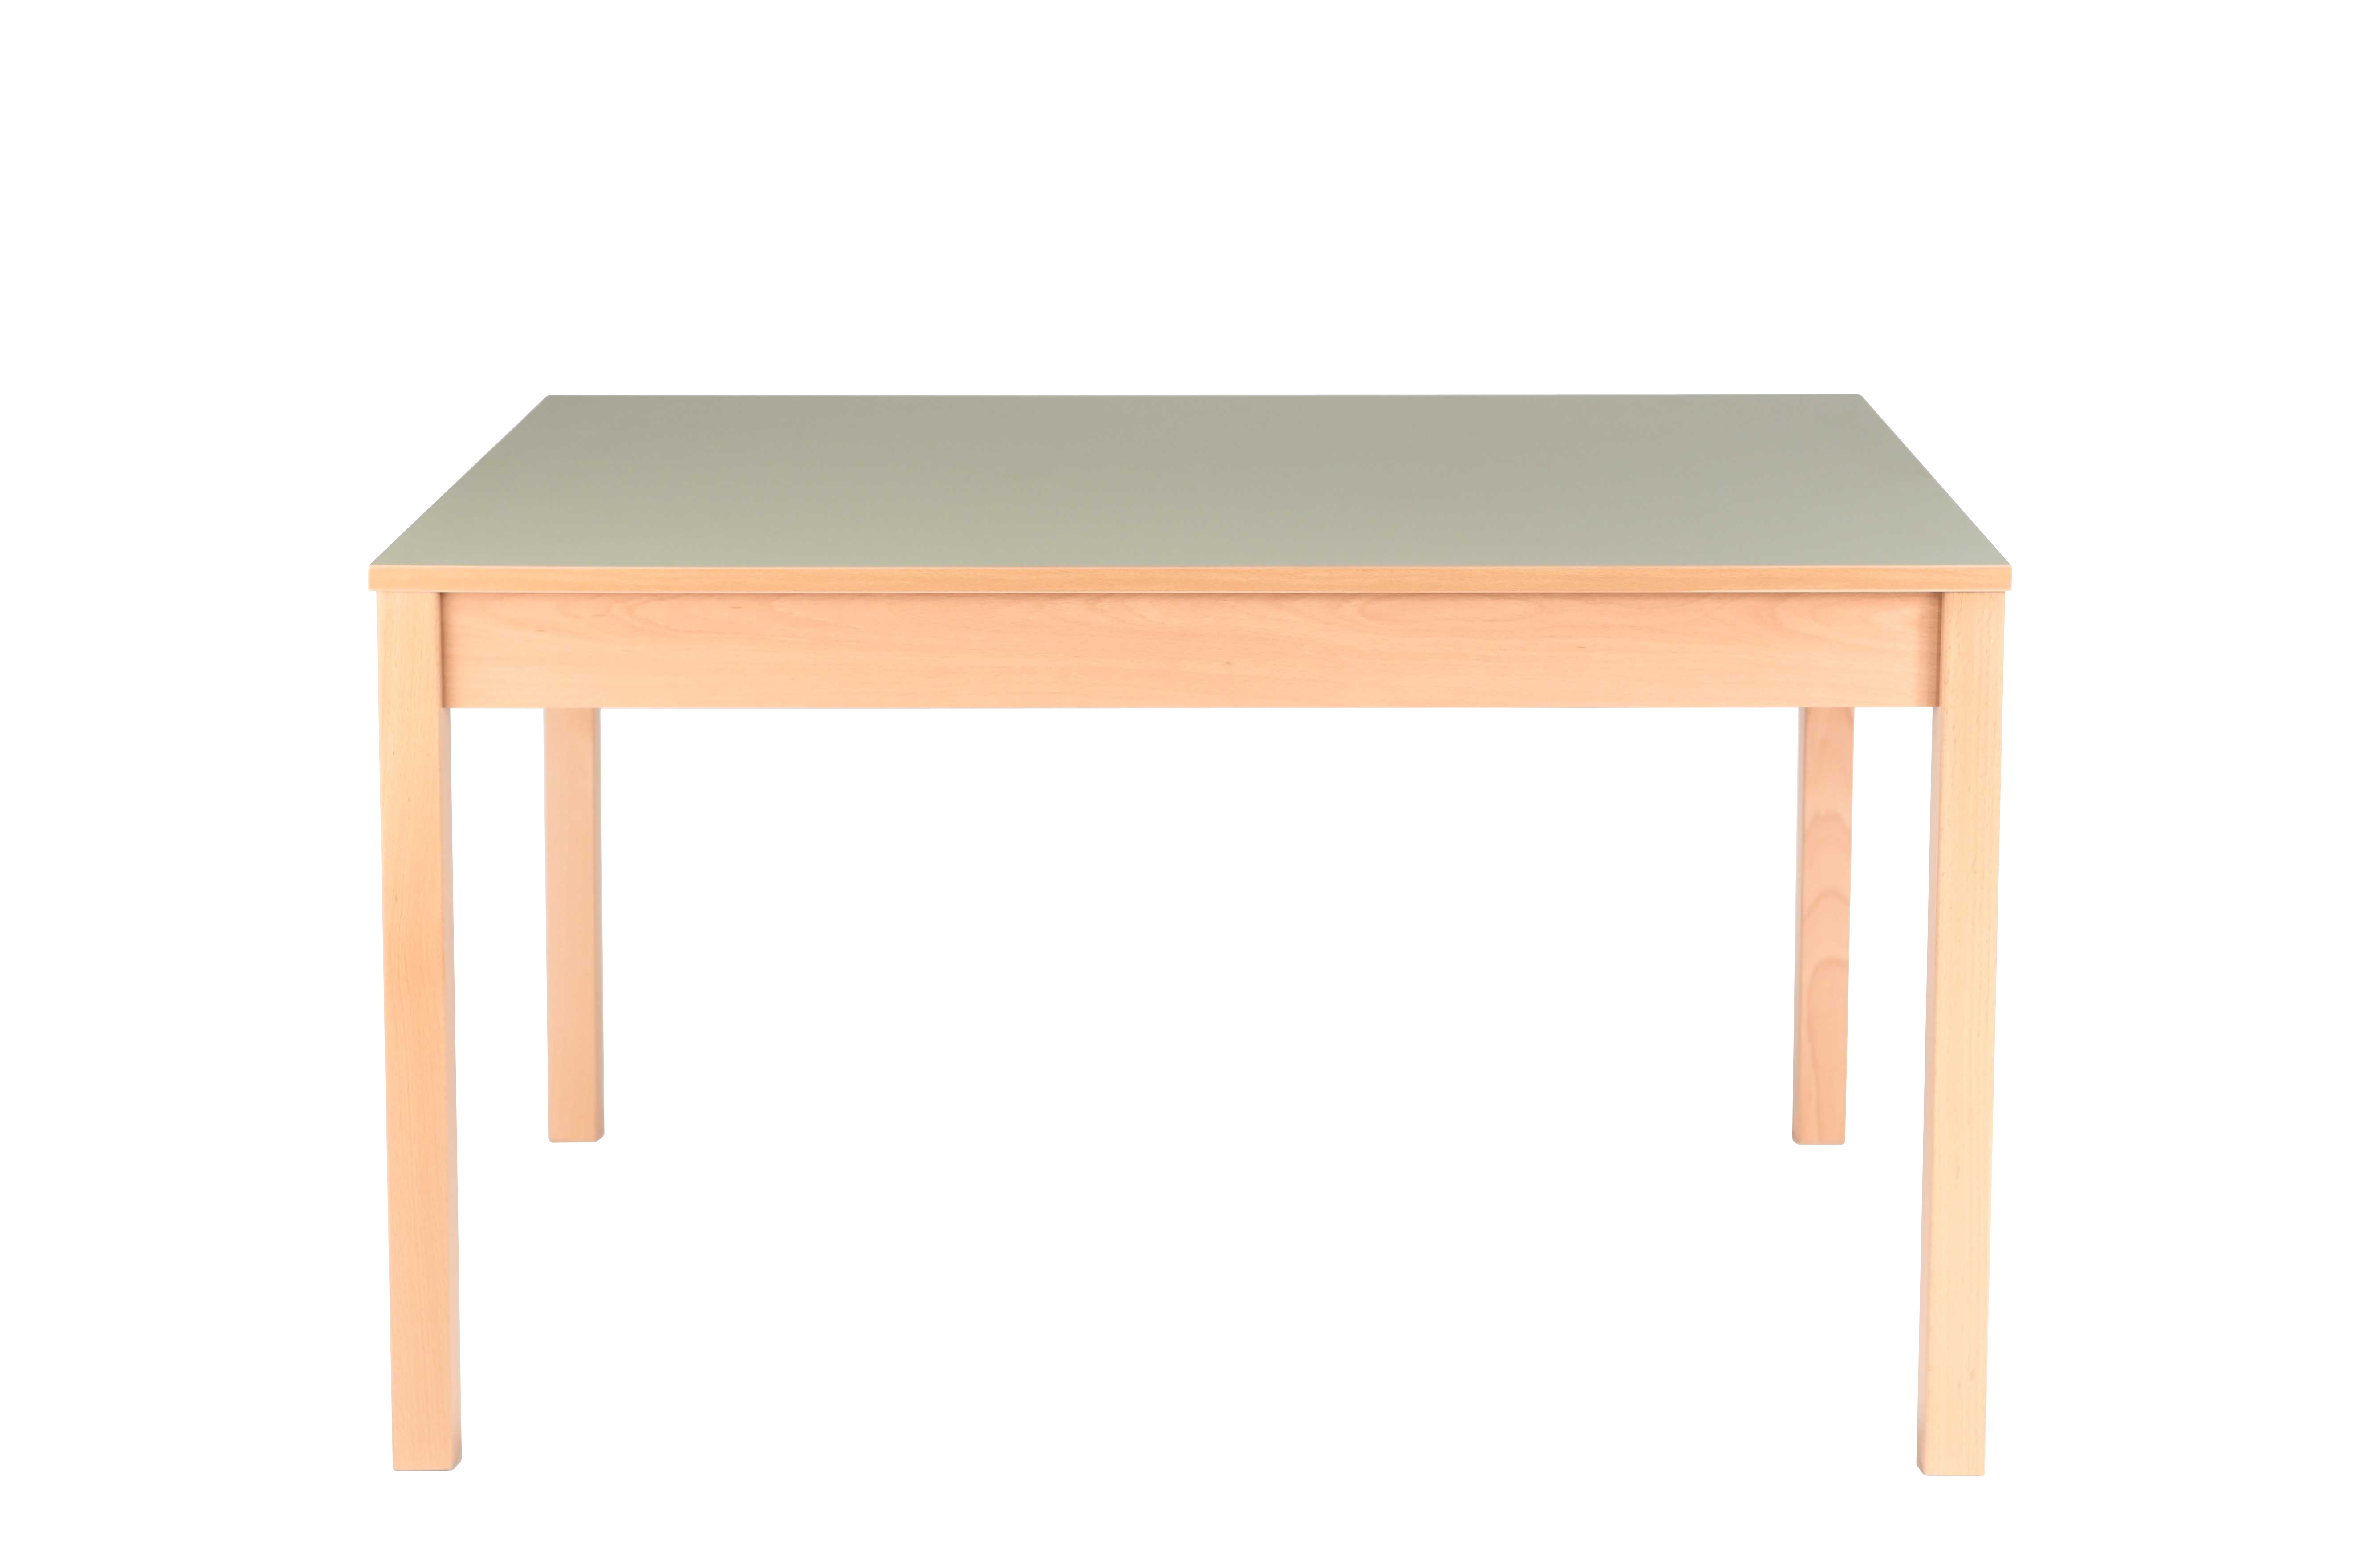 Tisch für Schulklub, Klassenzimmer, Schulspeisesaal, Karpov Spezial mit Möbeln Linoleum, Sádlík Tschechischer Möbelhersteller